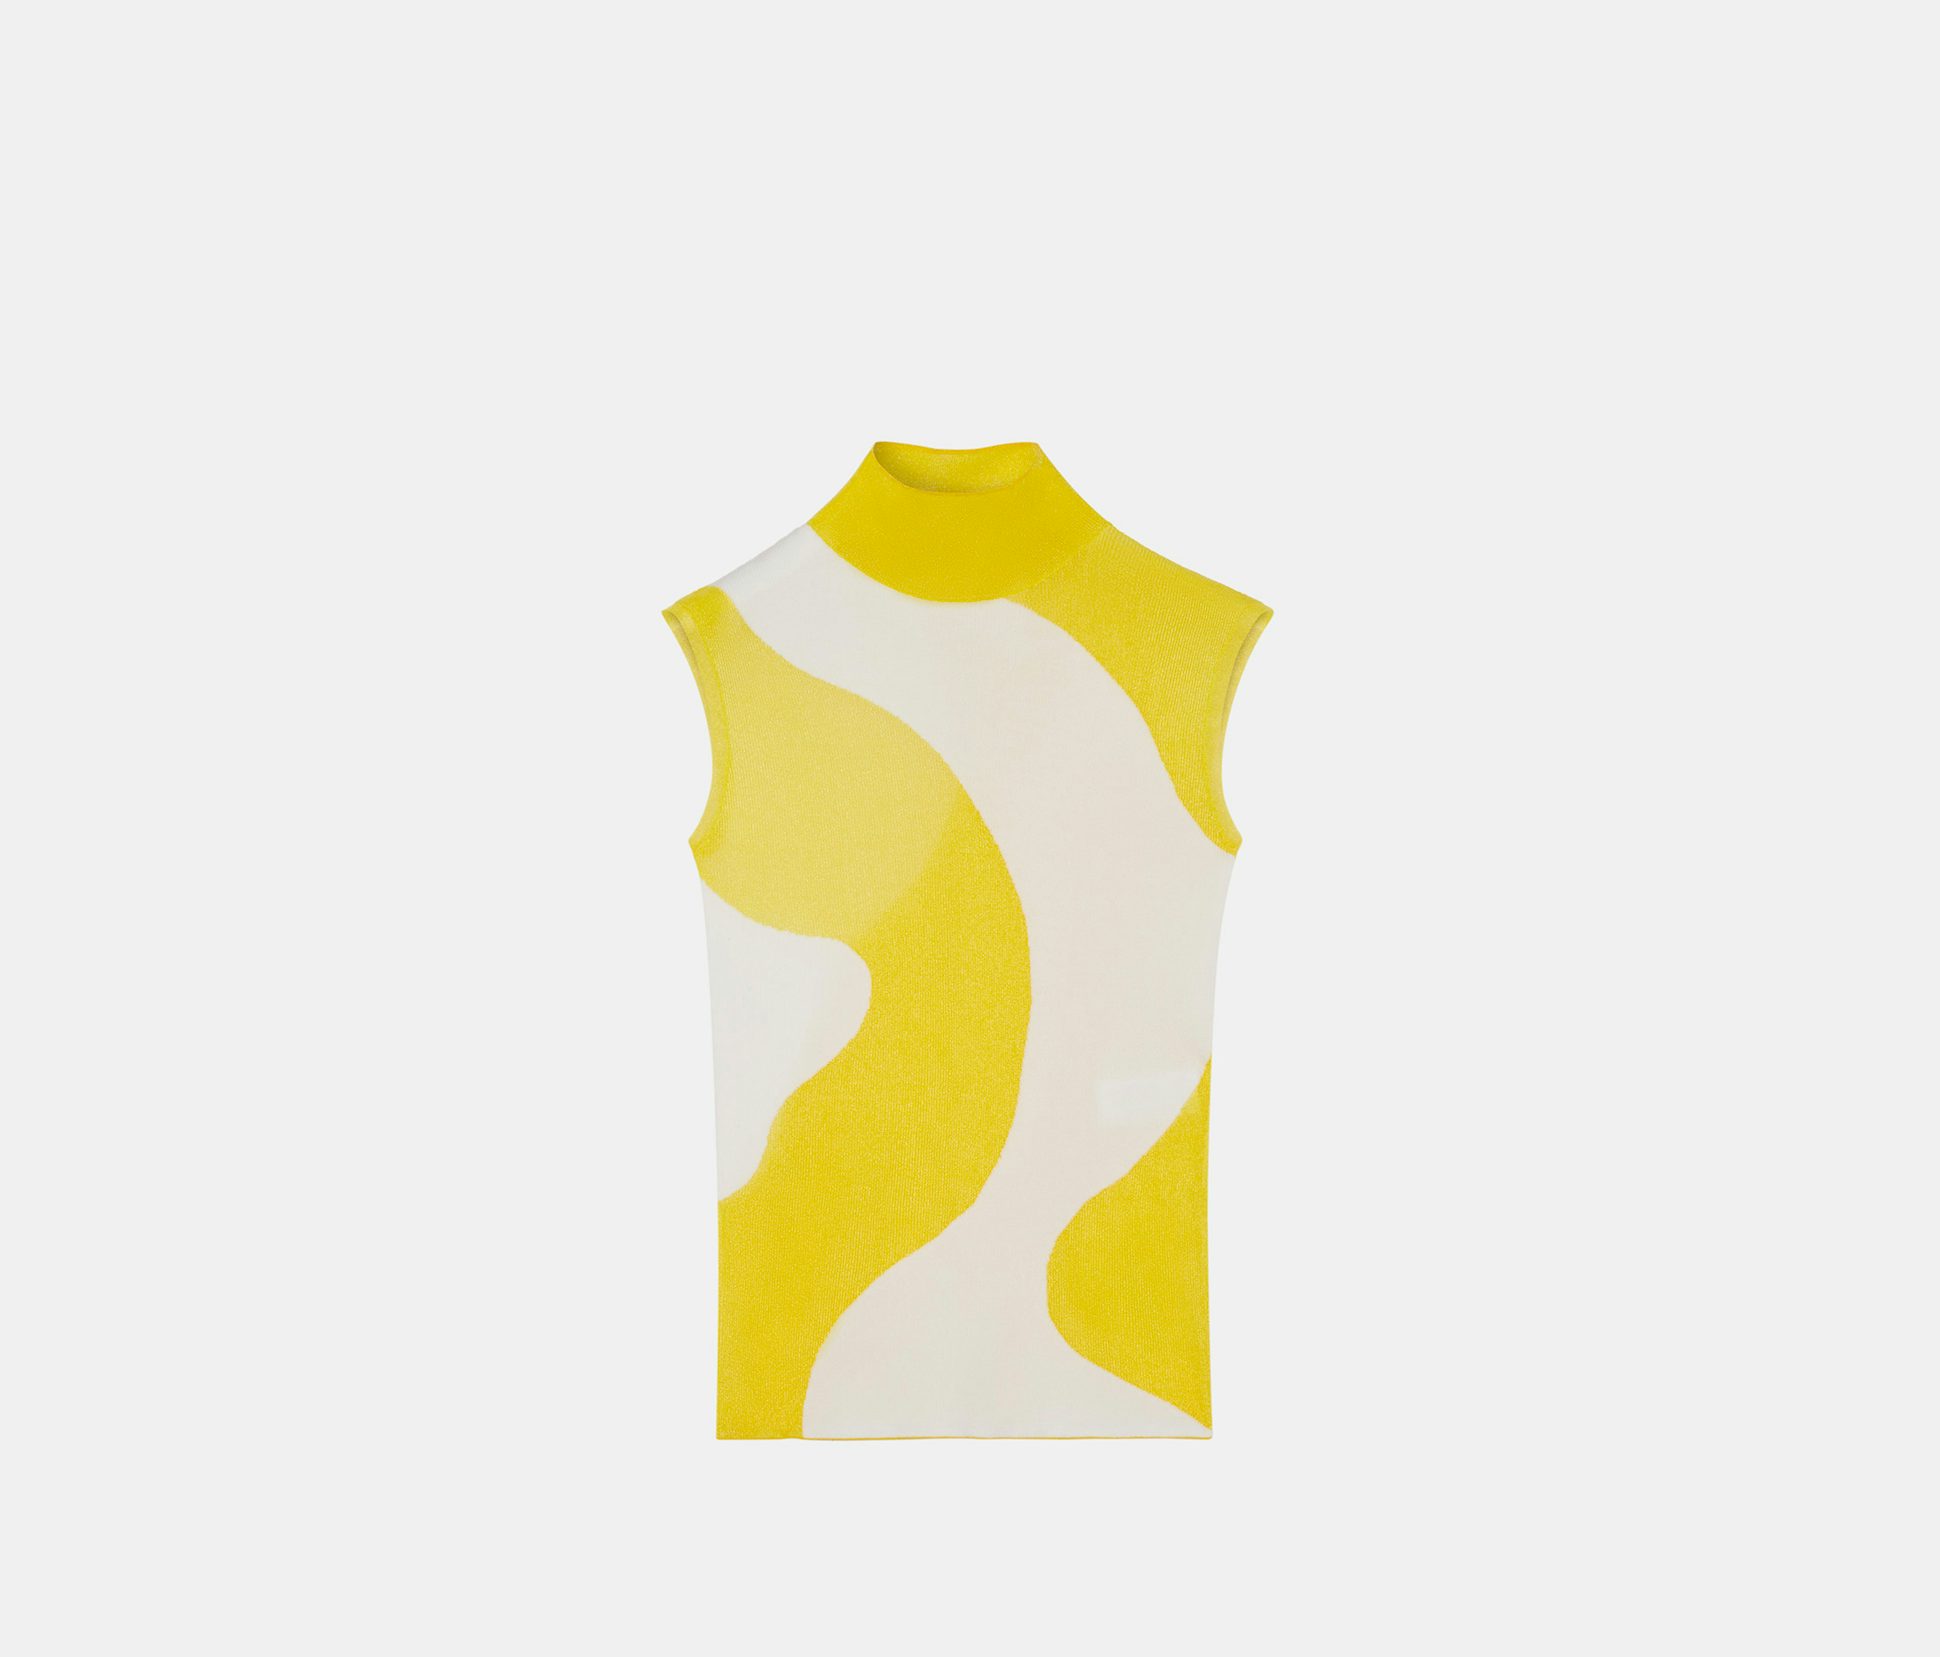 Top de cuello alto en intarsia amarillo y blanco - Nina Ricci